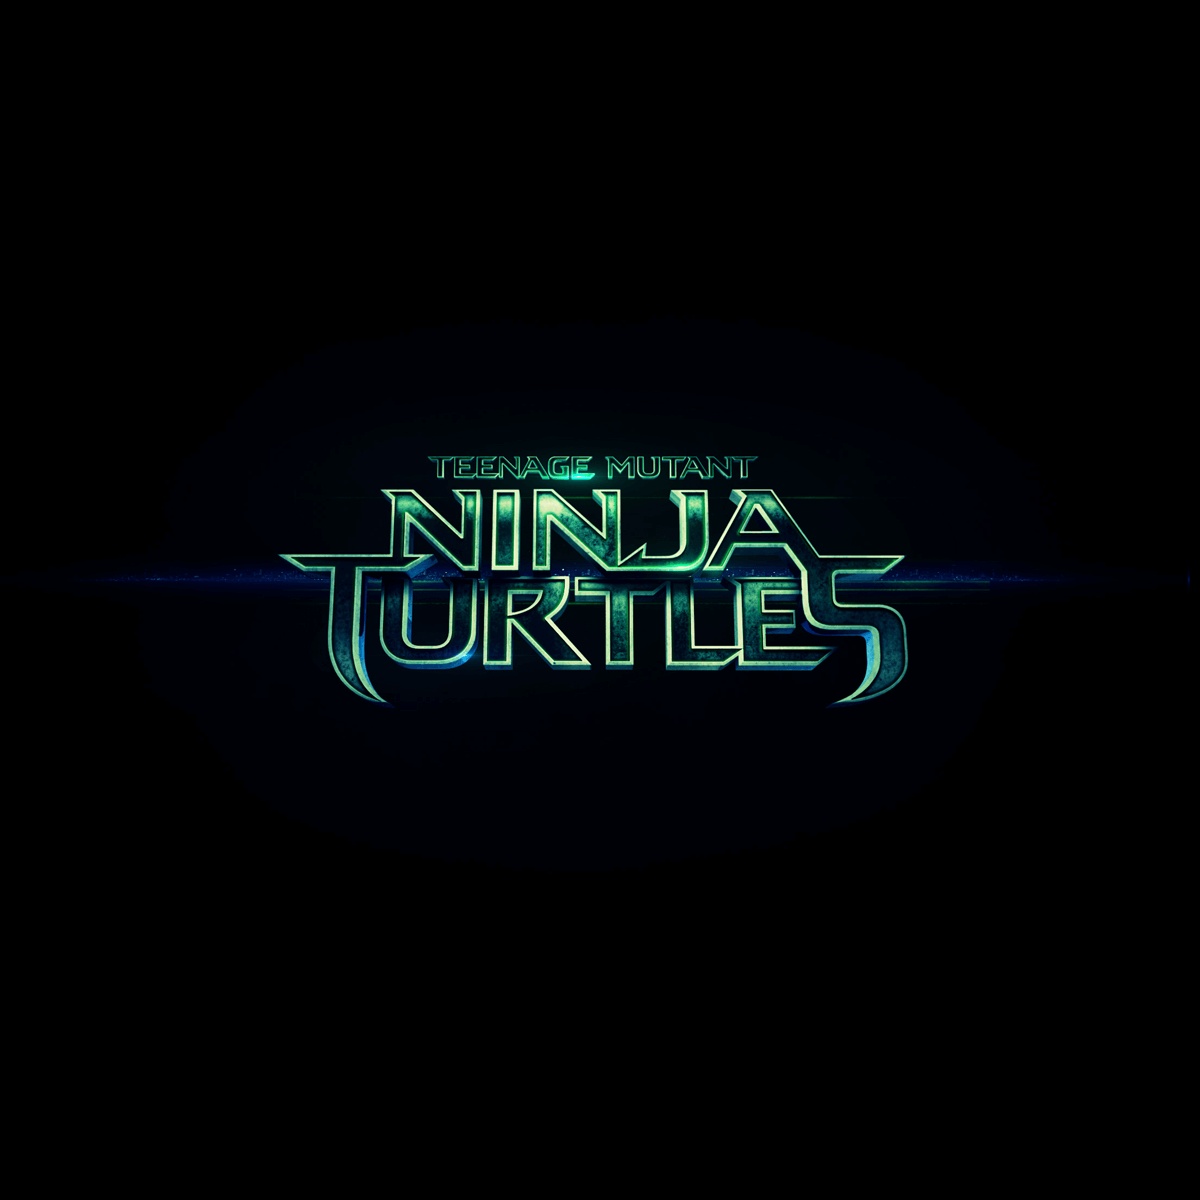 Teenage Mutant Ninja Turtles 2014 movie logo